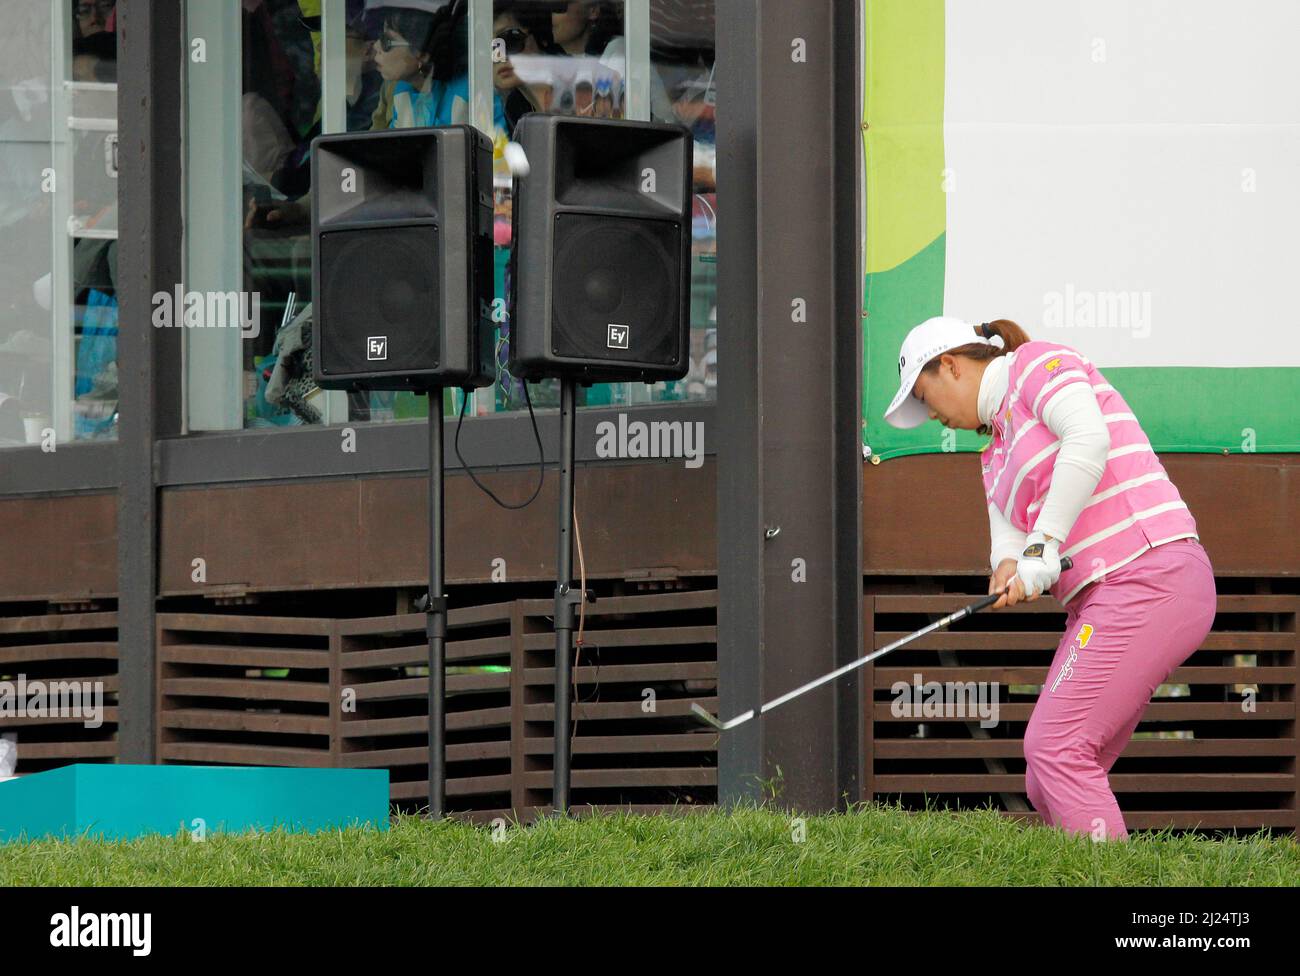 9 octobre 2011-Incheon, Corée du Sud-FENG, Sahnshan de Chine, joue des shes putt sur le 18th trous lors de la finale du championnat LPGA par Hana Bank au club de golf SKY72 à Incheon le 9 octobre 2011, Corée du Sud. Banque D'Images